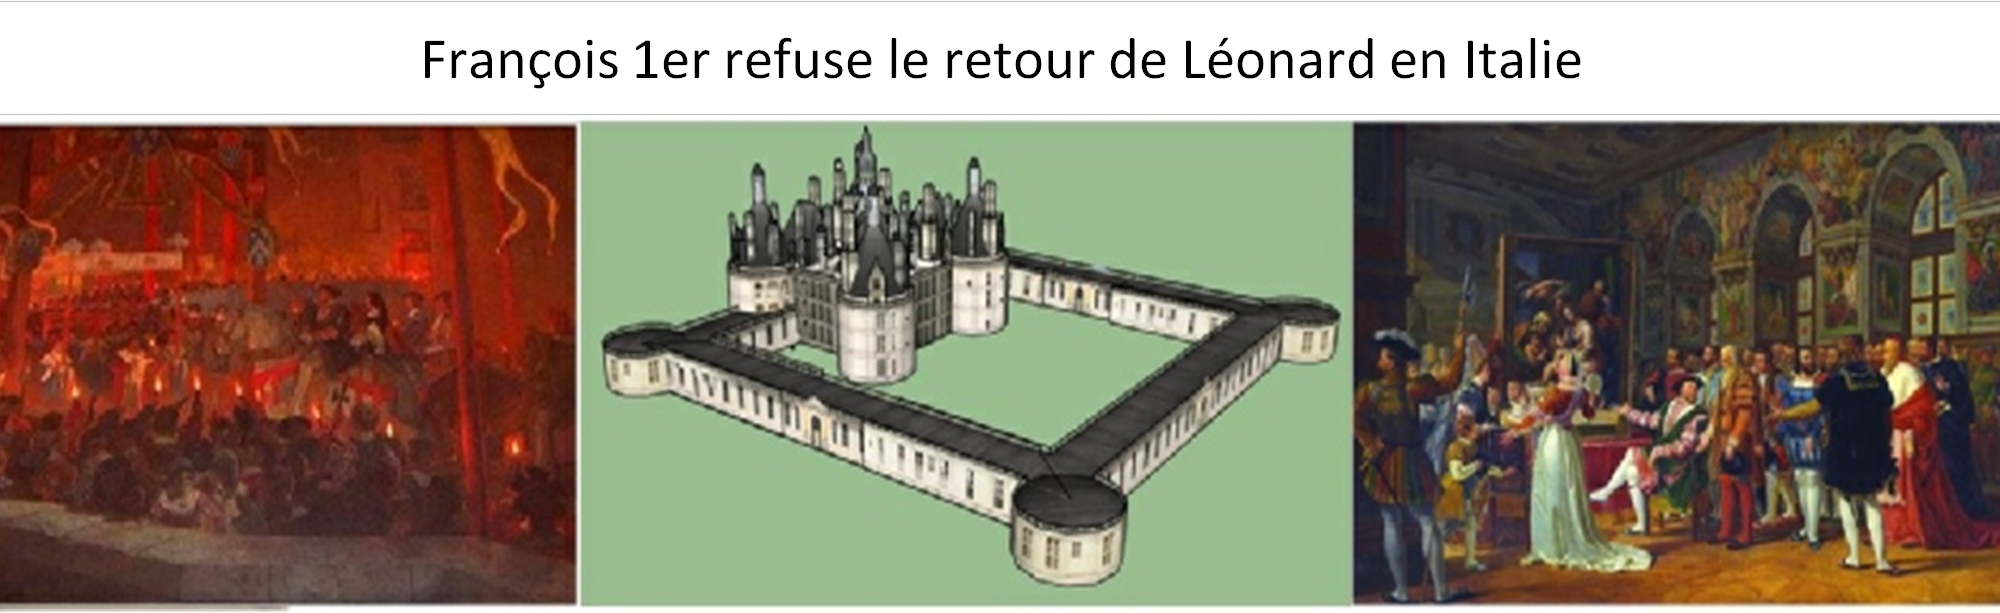 François 1er refuse le retour de Léonard en Italie